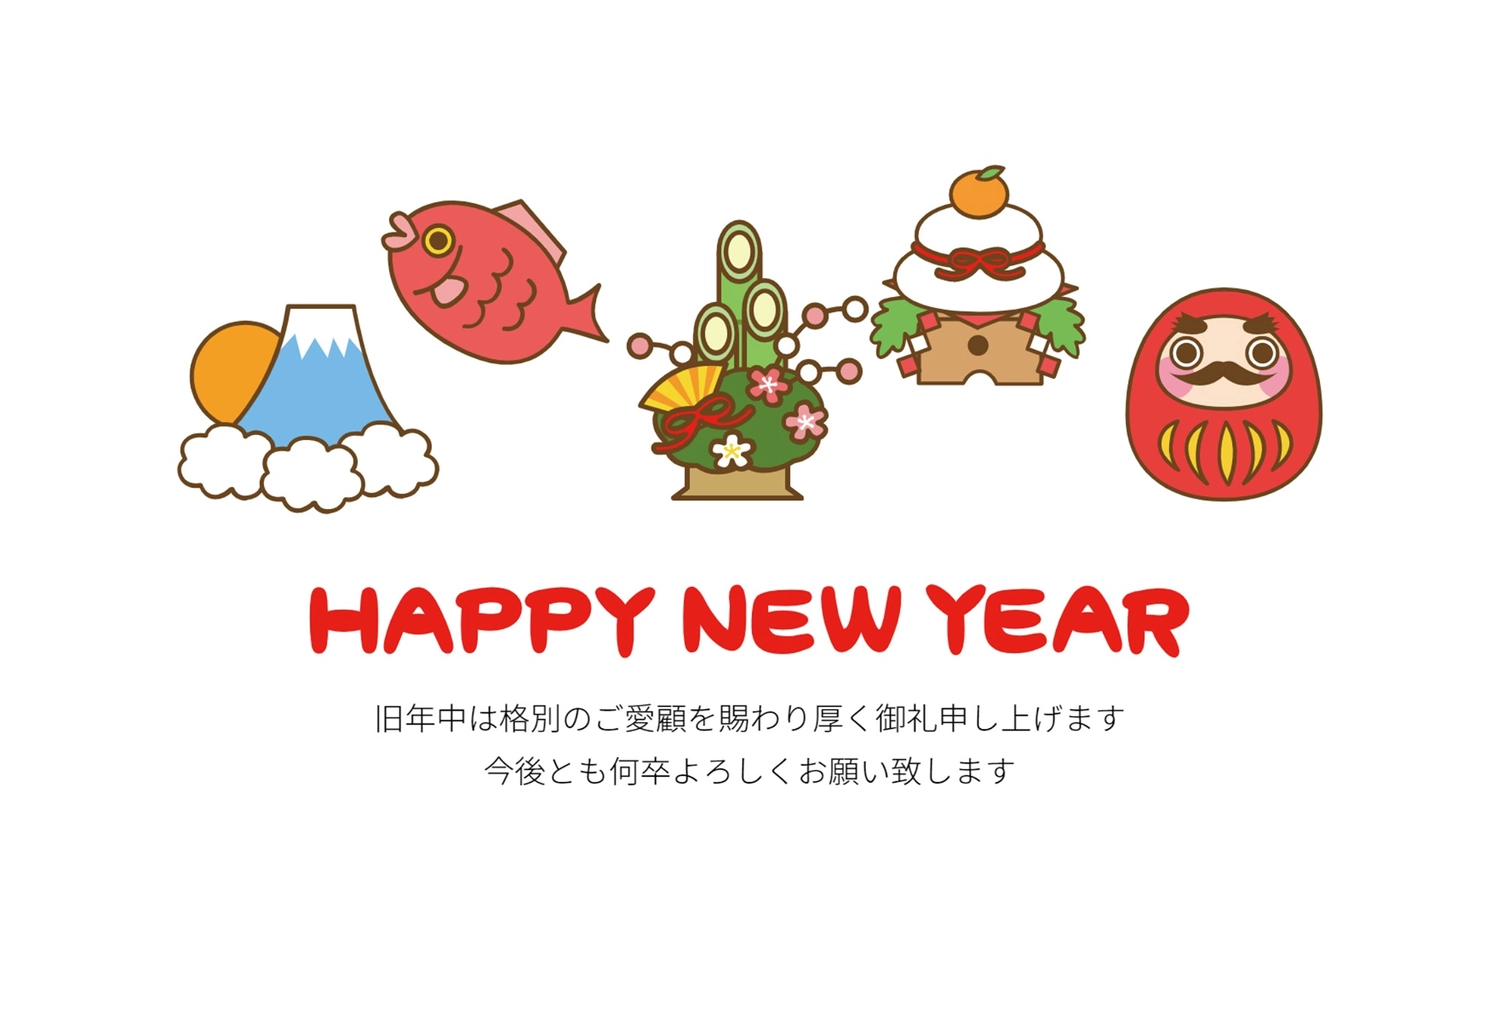 縁起物年賀状, cá tráp biển, lề, Chúc mừng năm mới, Thiệp năm mới mẫu